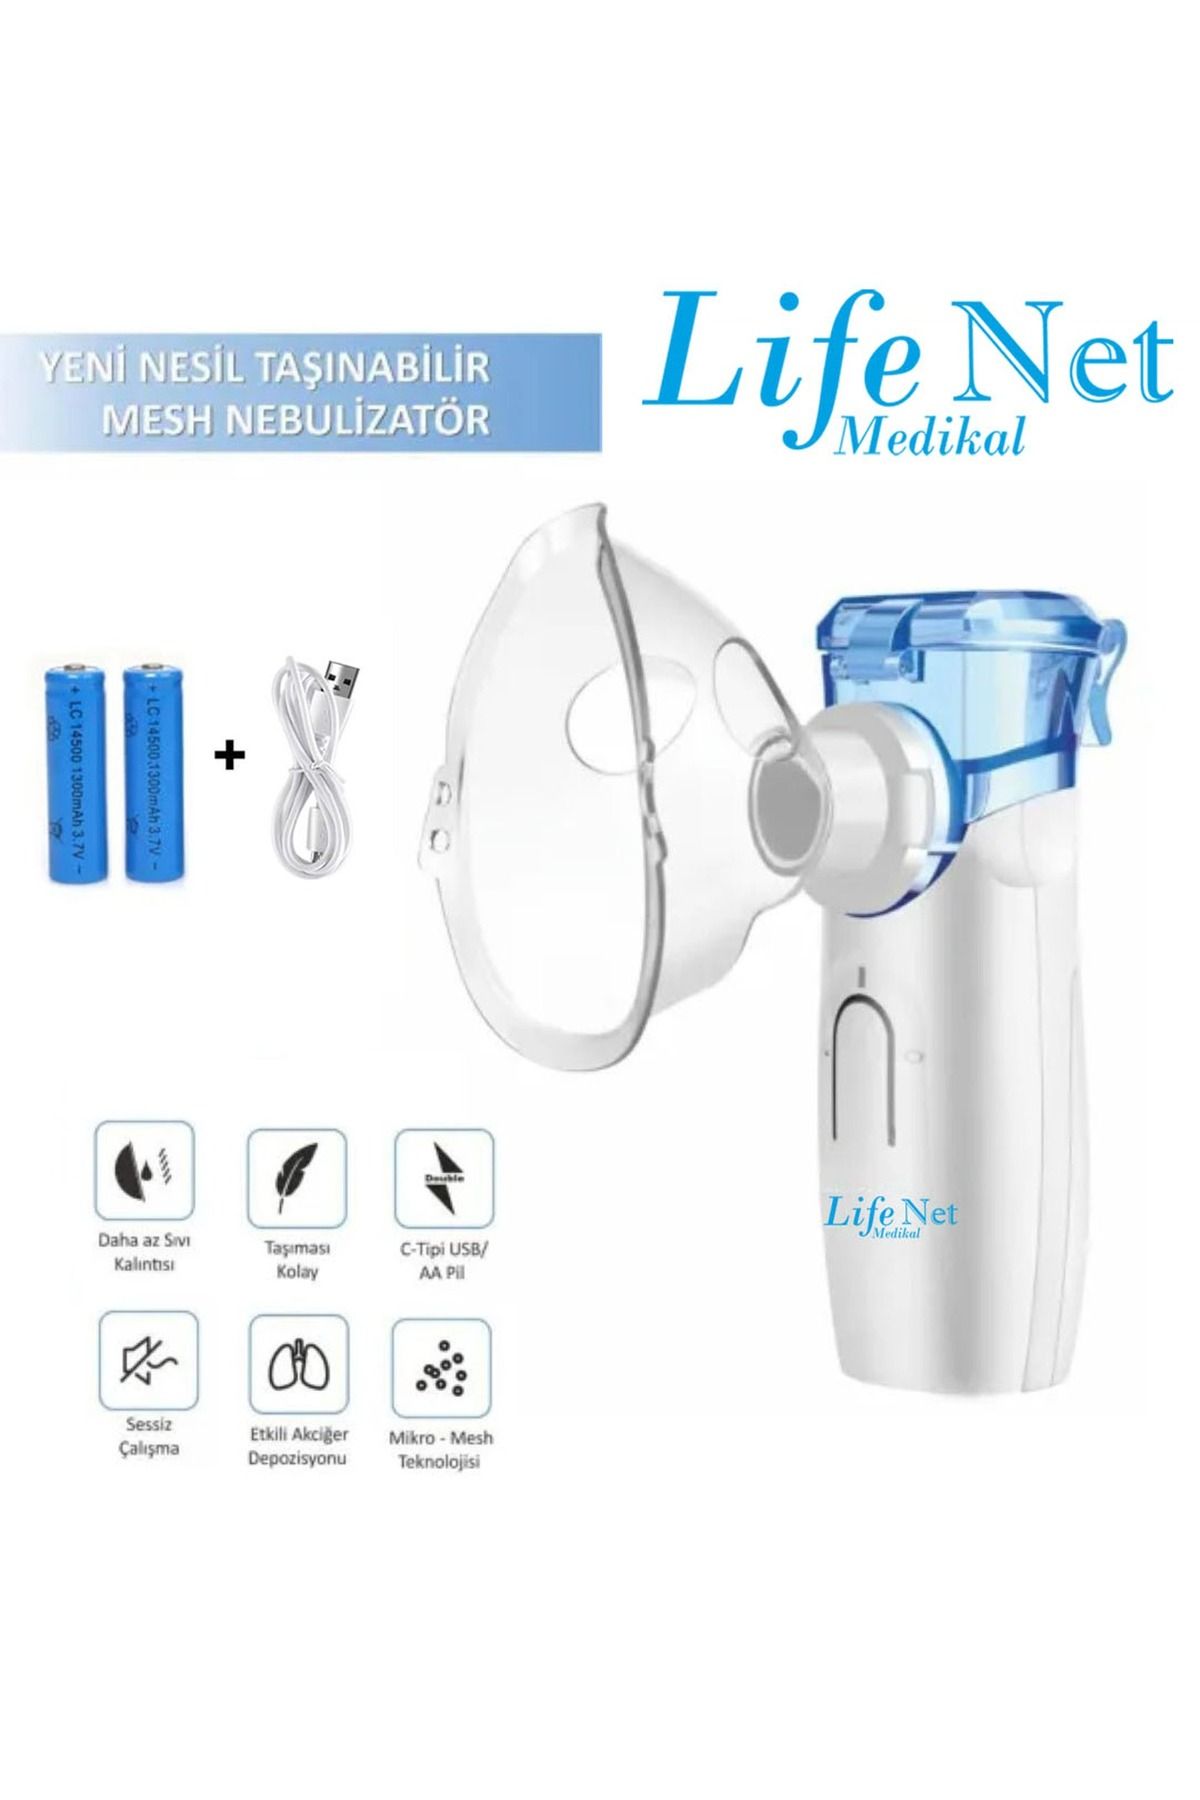 Life Net Medikal Taşınabilir Mesh Nebulizatör Süper Sessiz Yeni Nesil Nebulizatör Ys35